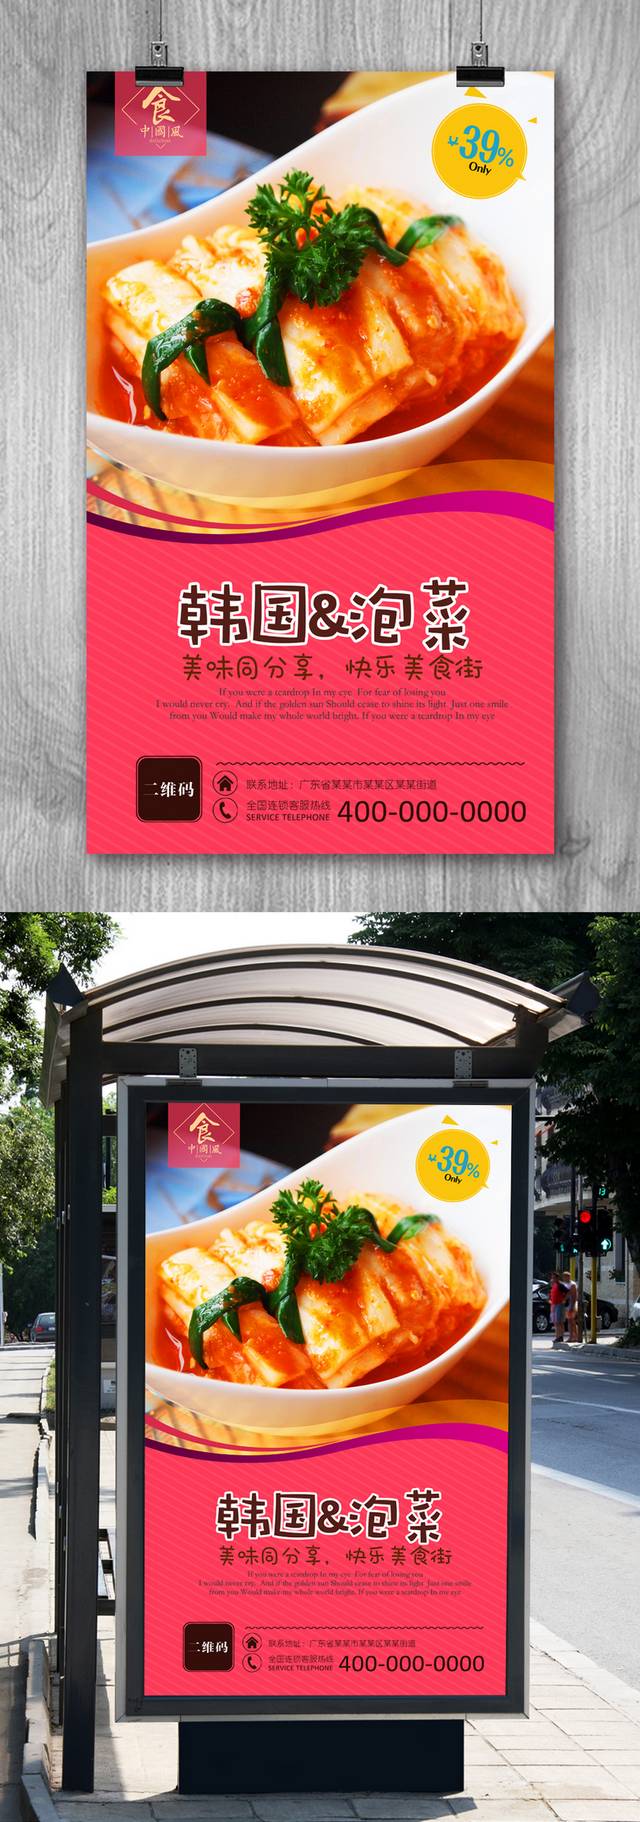 原创韩式泡菜宣传海报设计